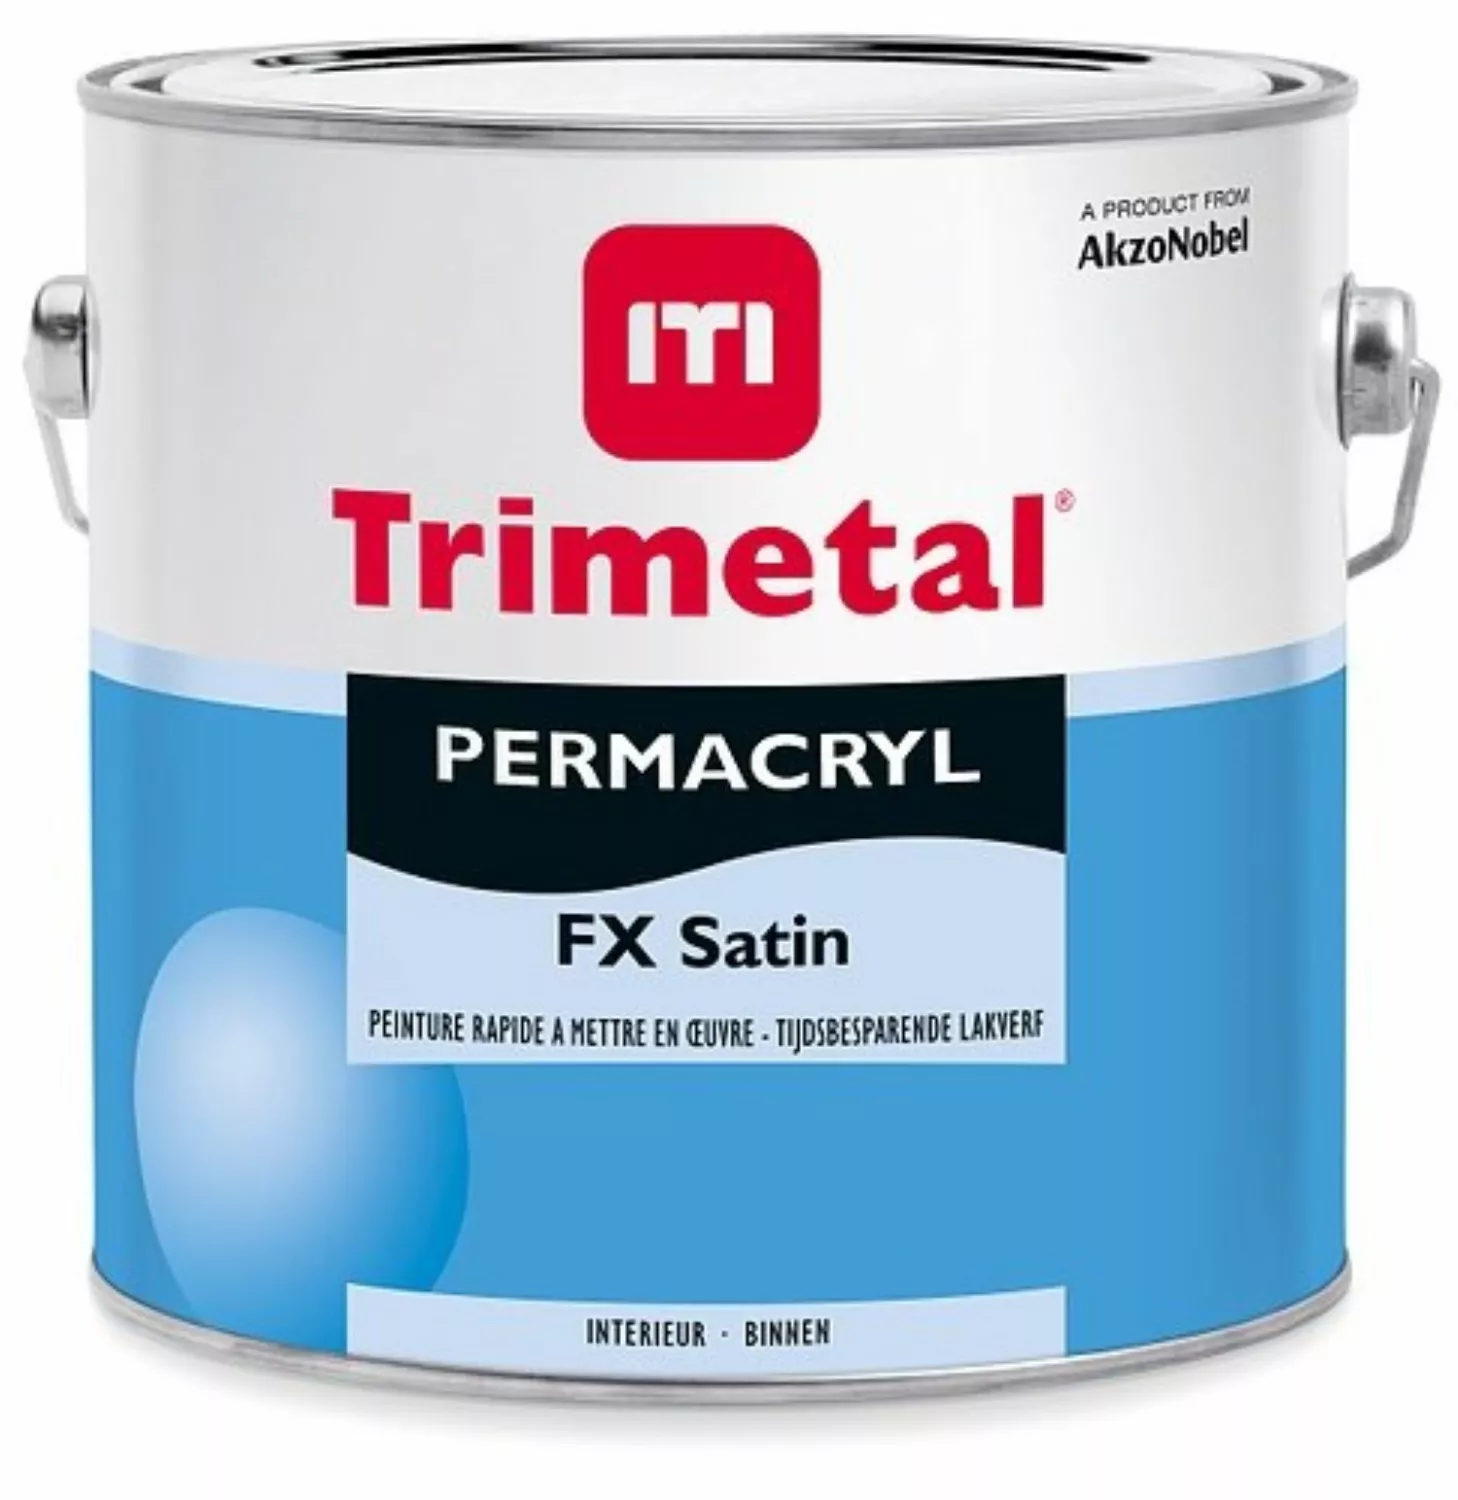 Trimetal Permacryl FX Satin lakverf - op kleur gemengd - 2,5L-image